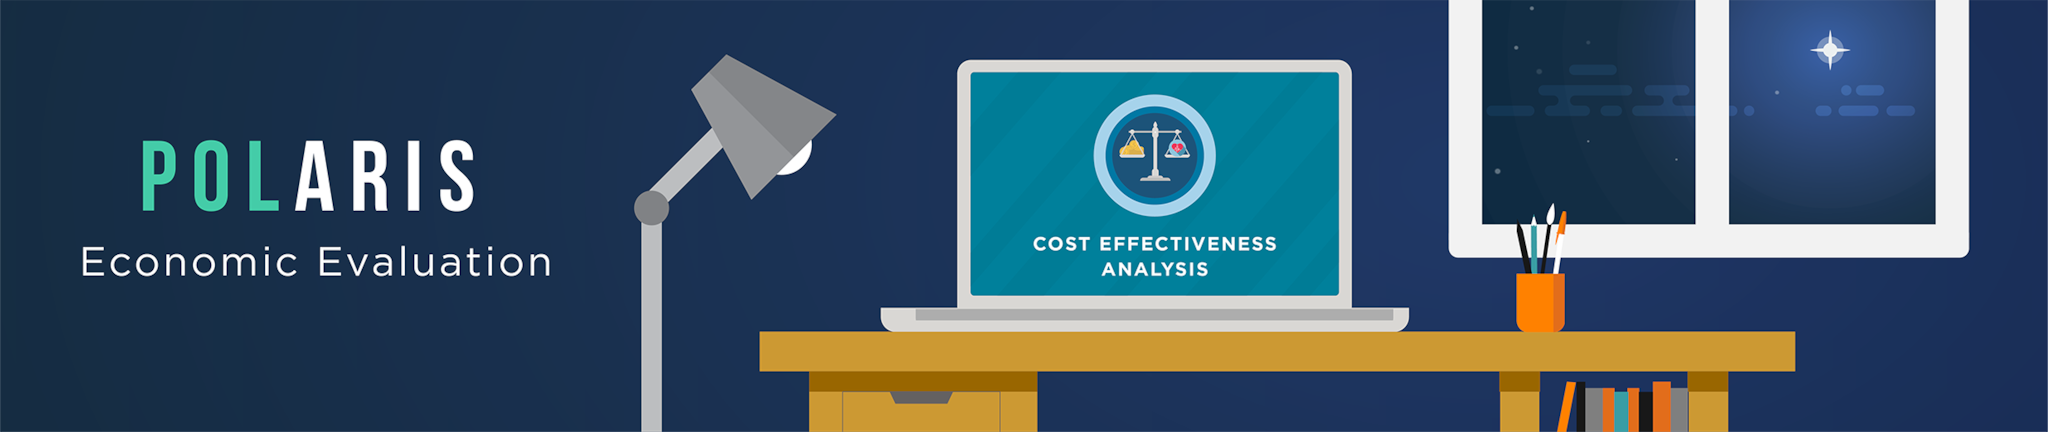 POLARIS Economic Evaluation Cost Effectiveness Analysis